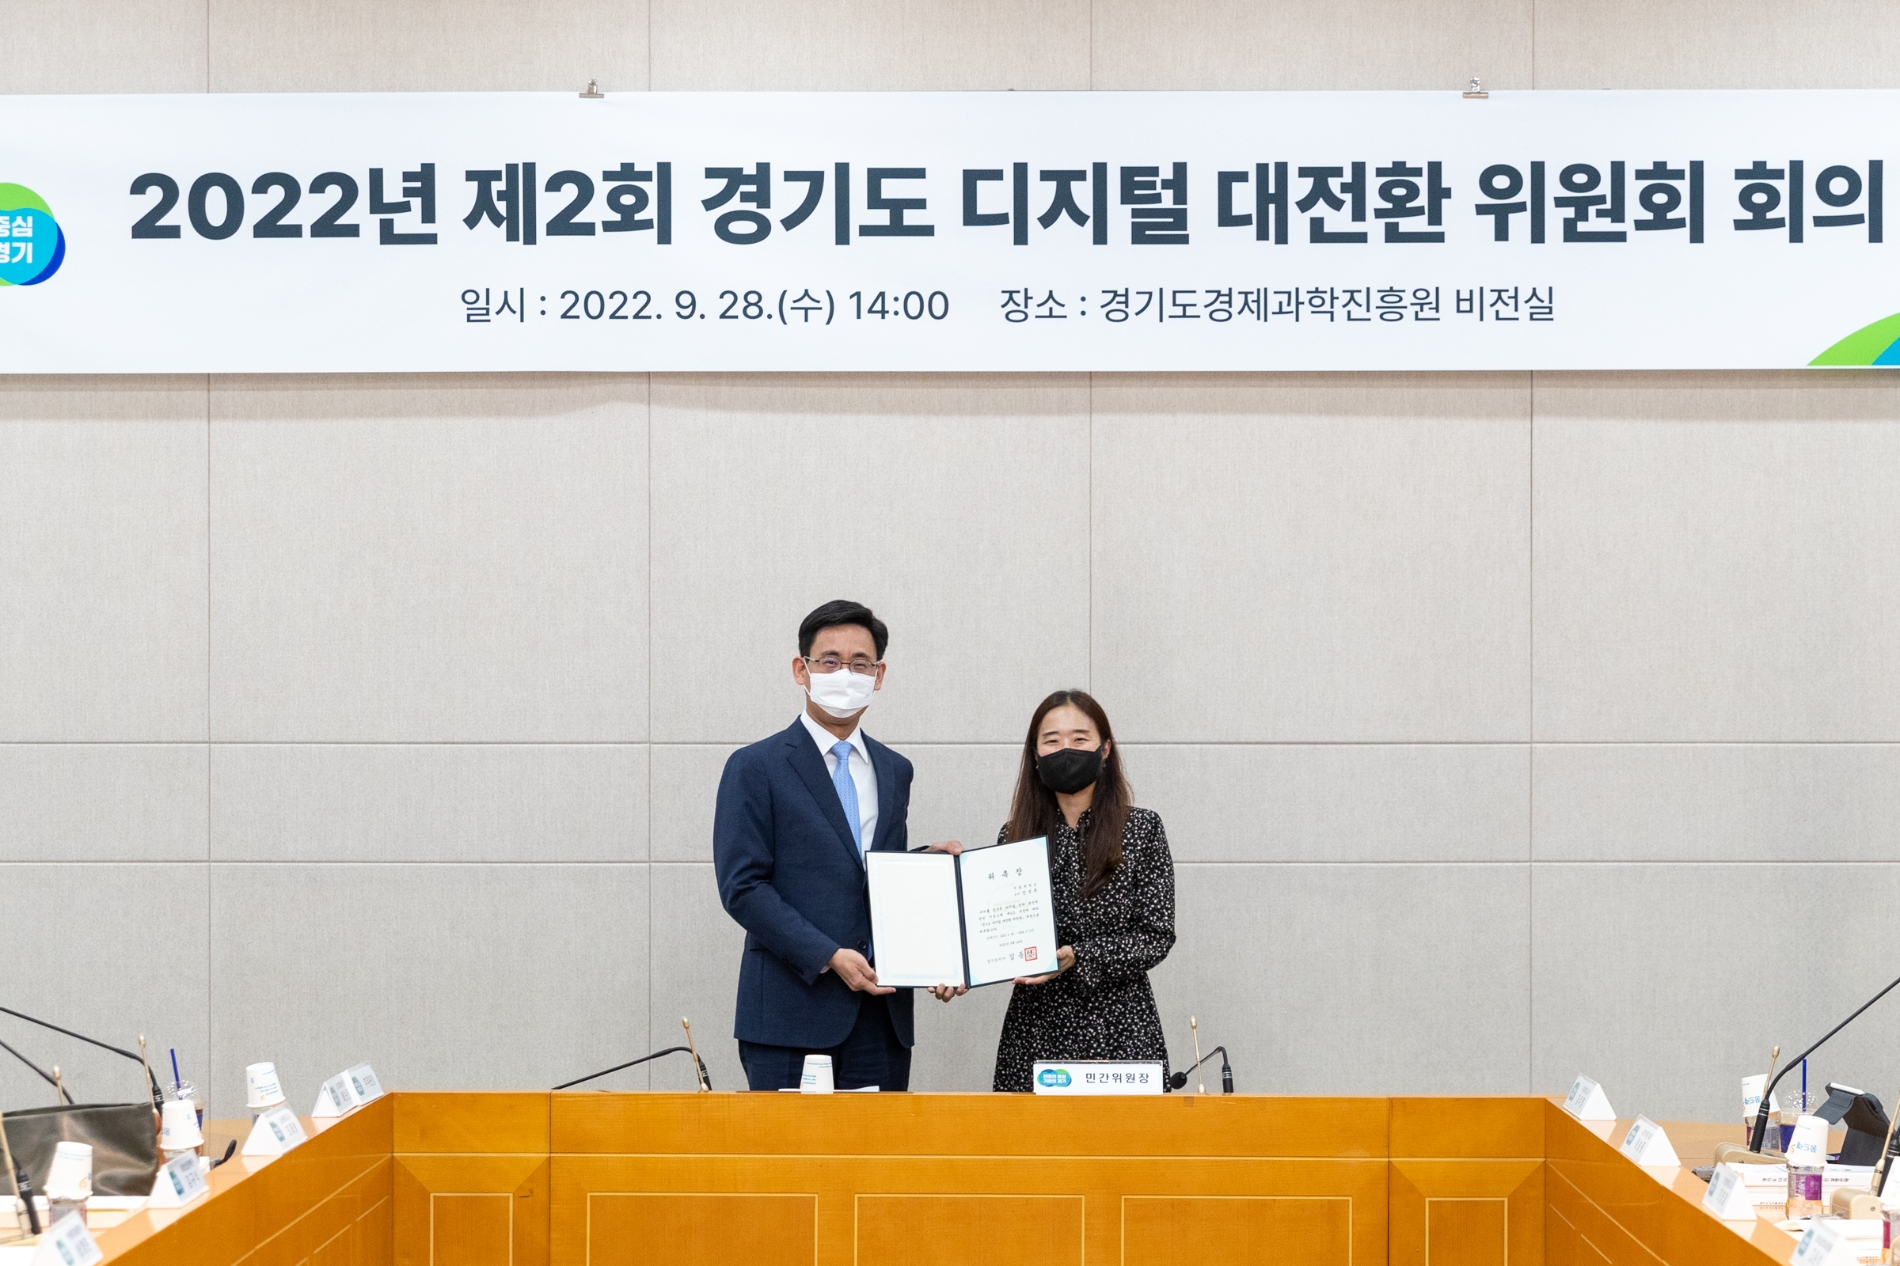 경기도 디지털 대전환 위원회 회의 개최